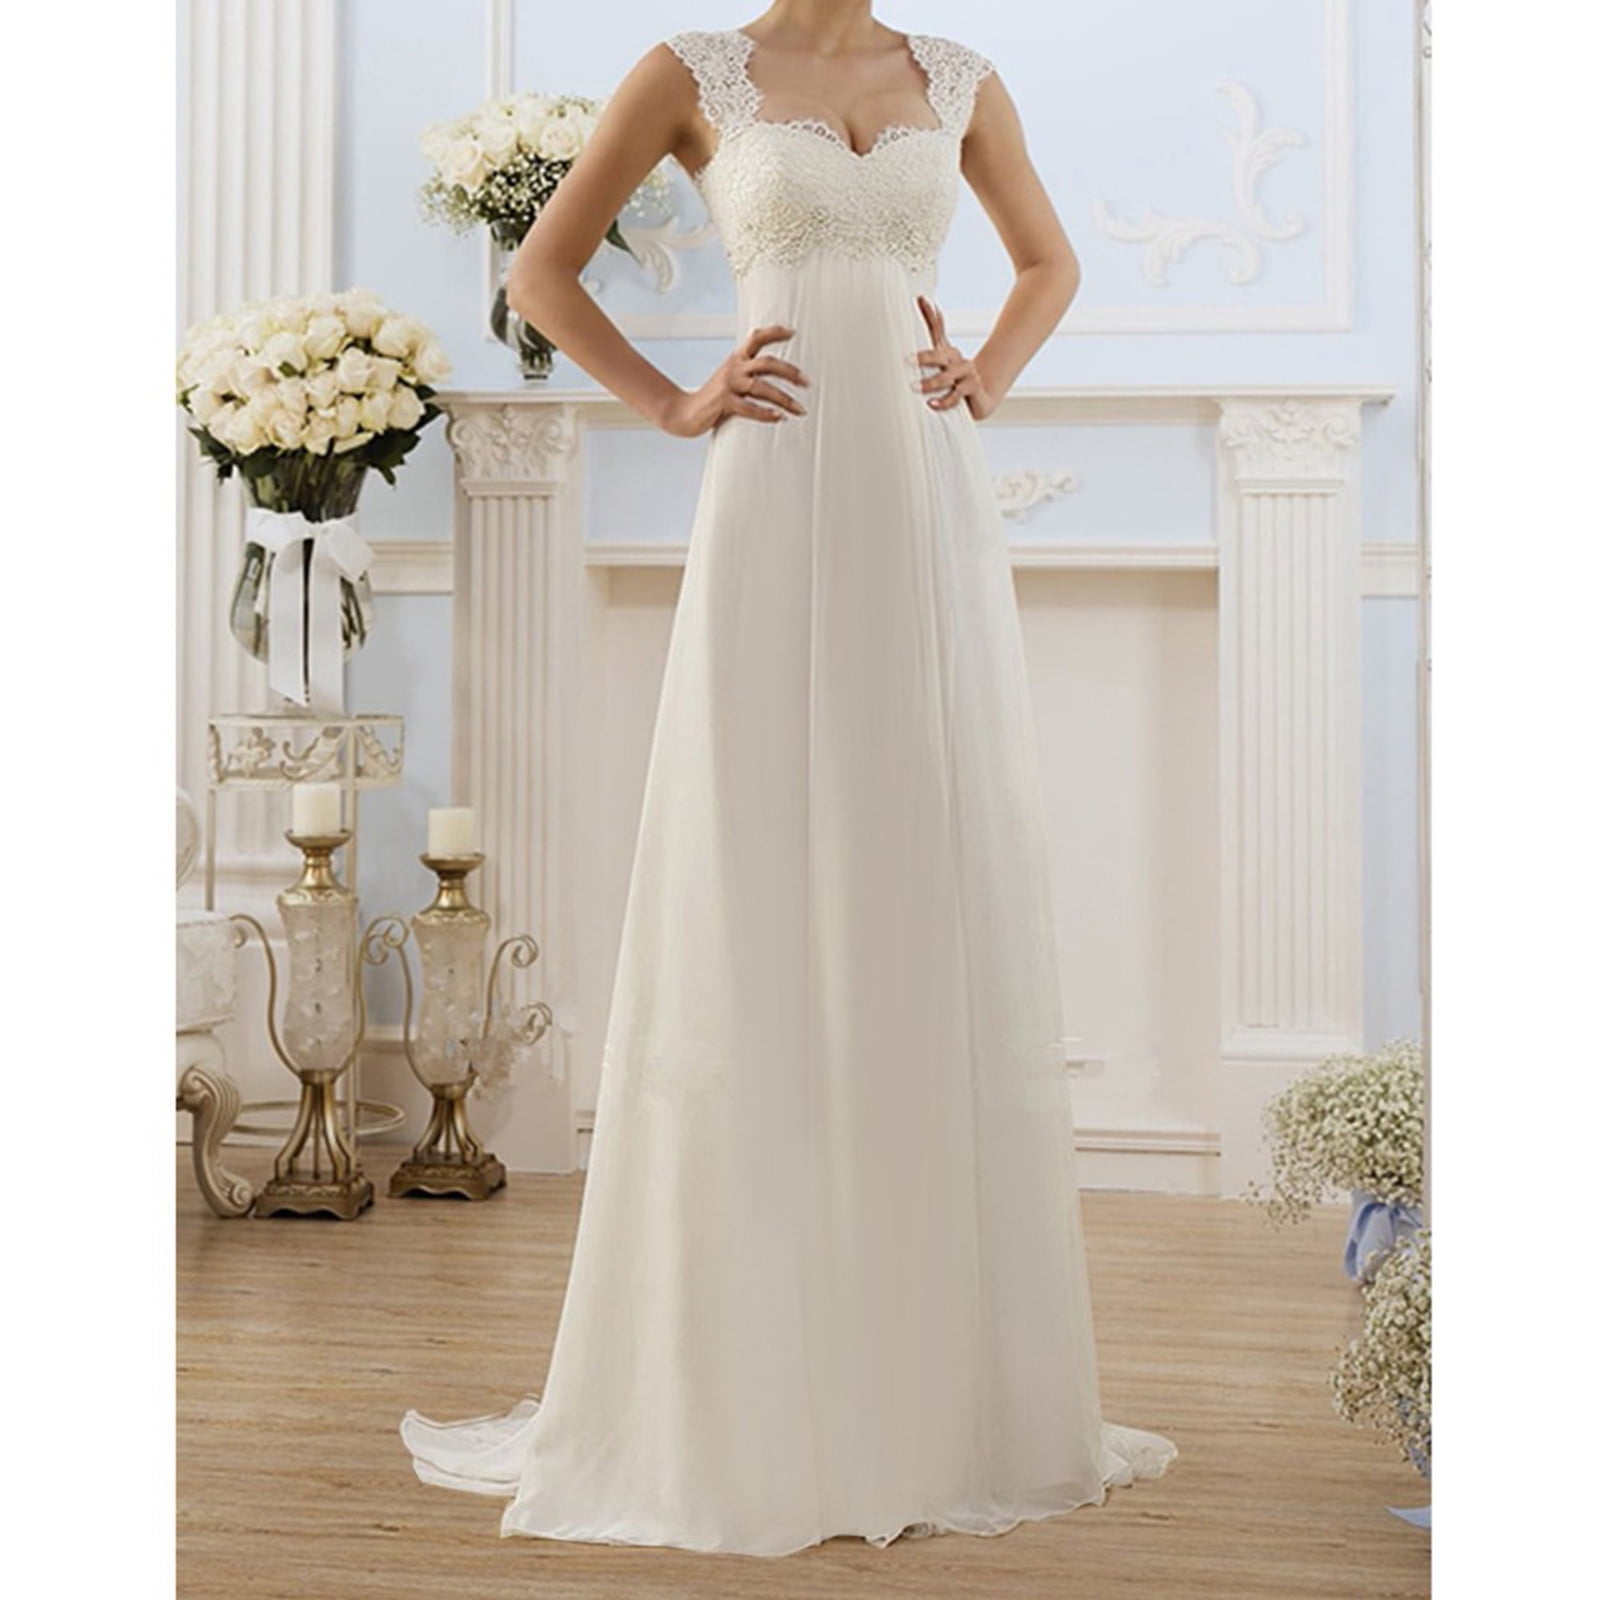 Usmixi Dresses for Women Wedding Guest Party Elegant Lace Plus Size ...